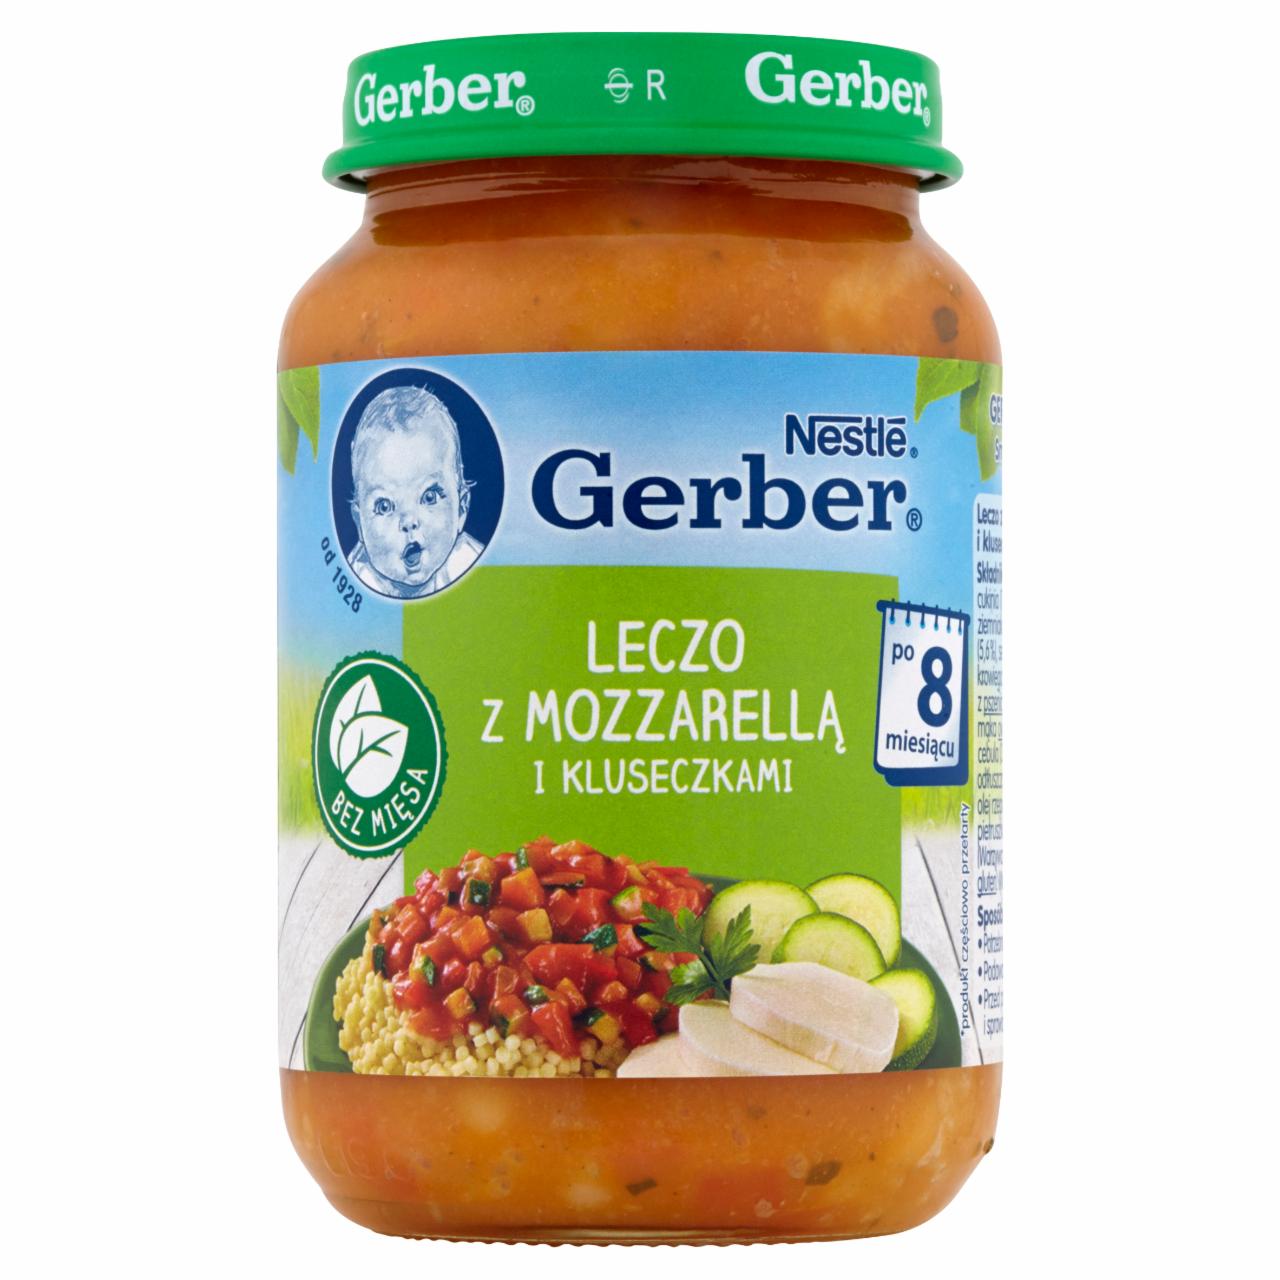 Zdjęcia - Gerber Leczo z mozzarellą i kluseczkami po 8 miesiącu 190 g